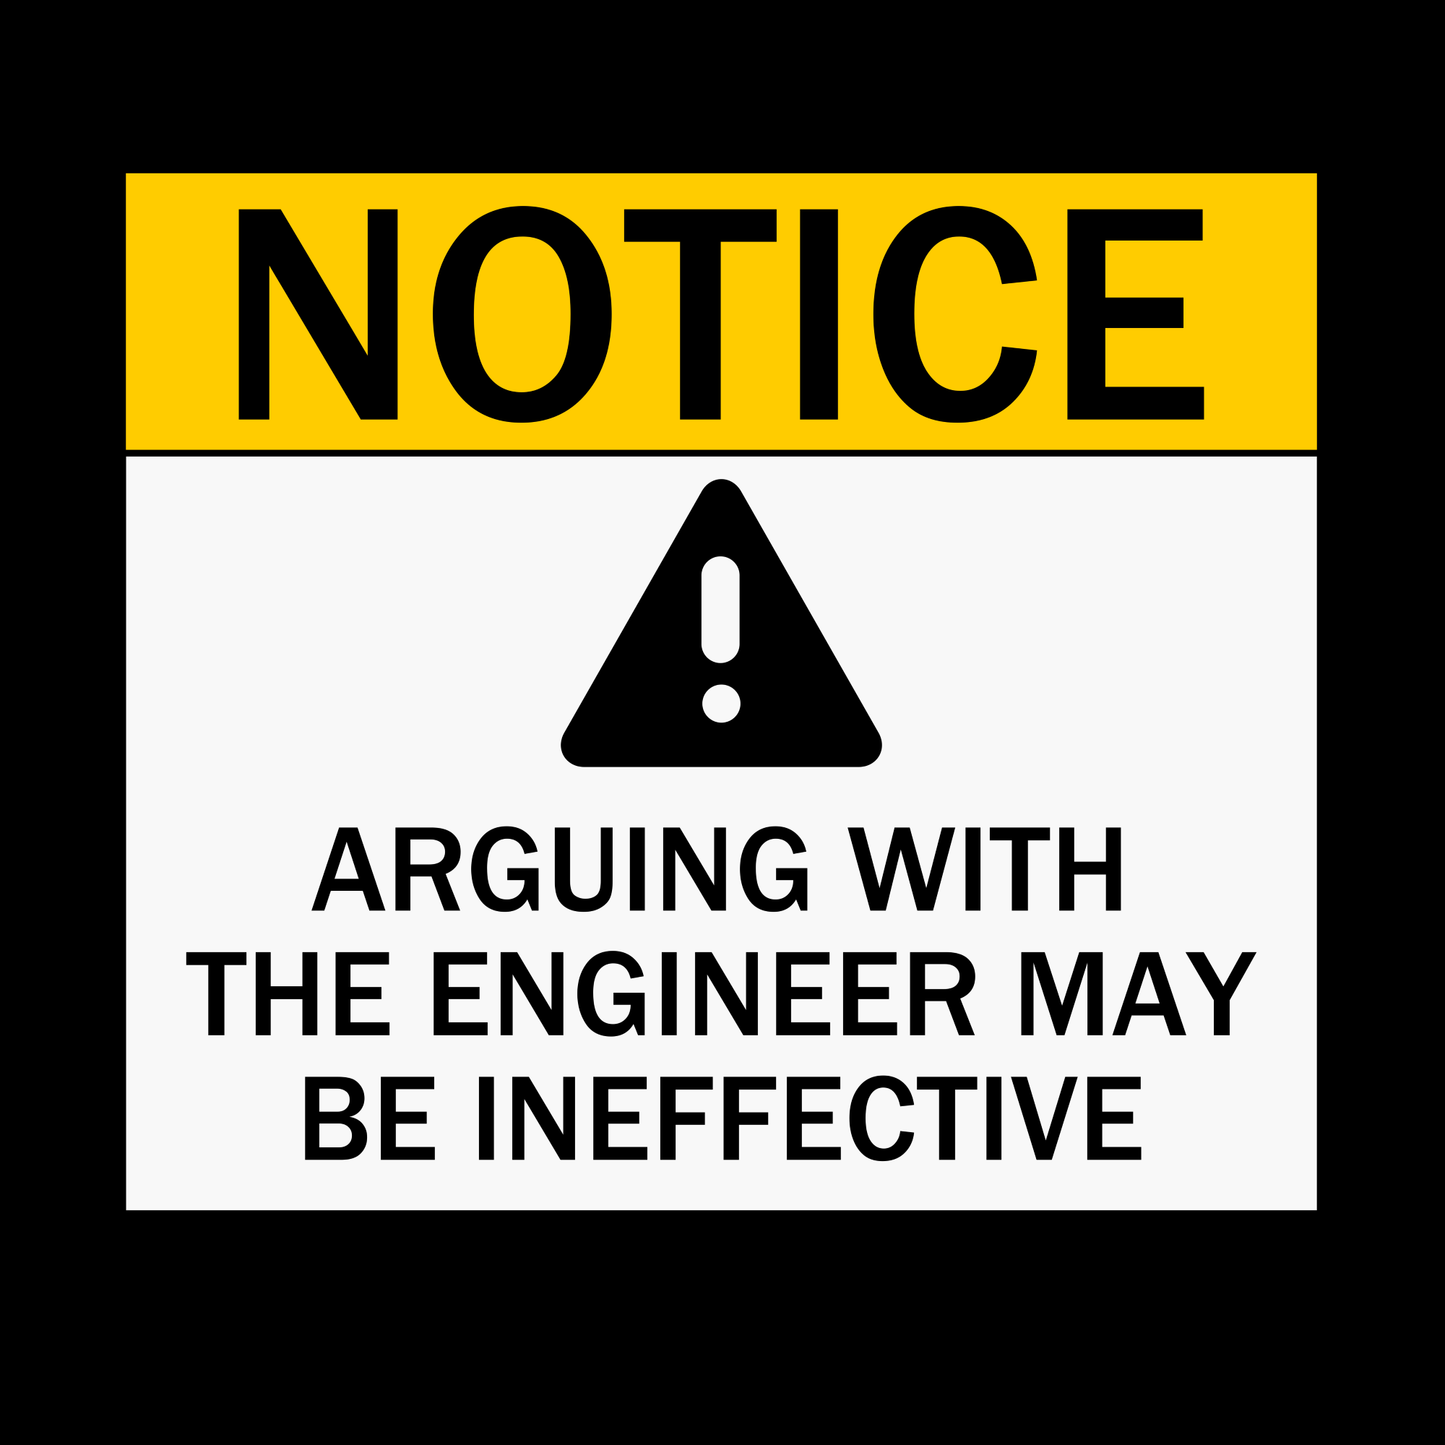 Aviso: discutir con el ingeniero puede resultar ineficaz